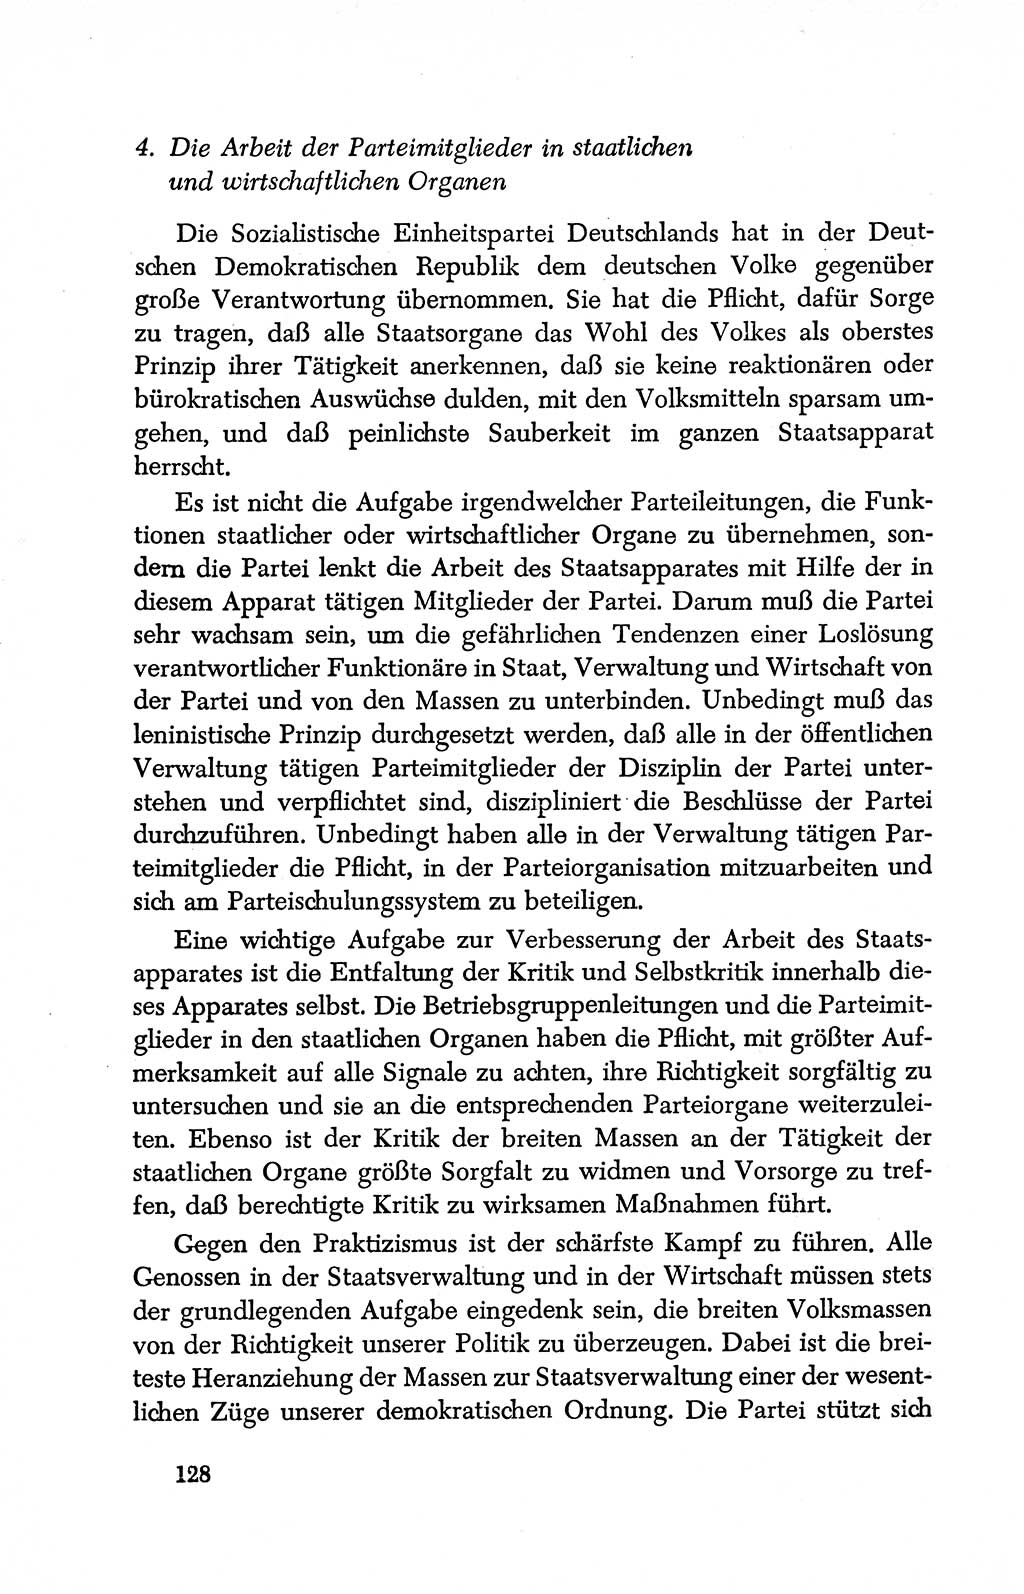 Dokumente der Sozialistischen Einheitspartei Deutschlands (SED) [Deutsche Demokratische Republik (DDR)] 1950-1952, Seite 128 (Dok. SED DDR 1950-1952, S. 128)